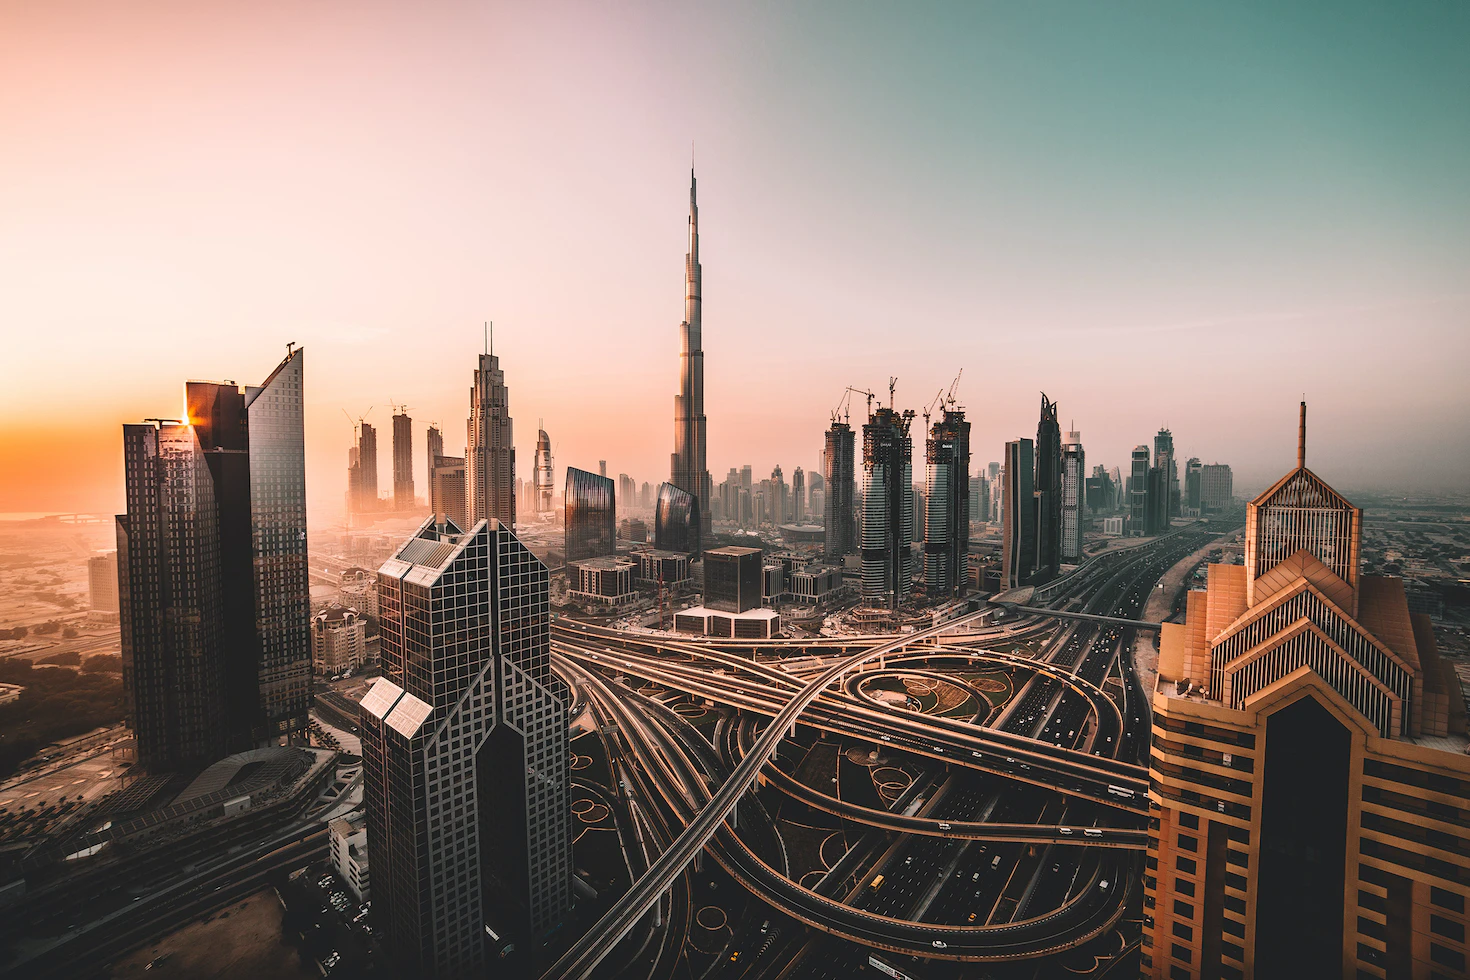 A photo of Dubai